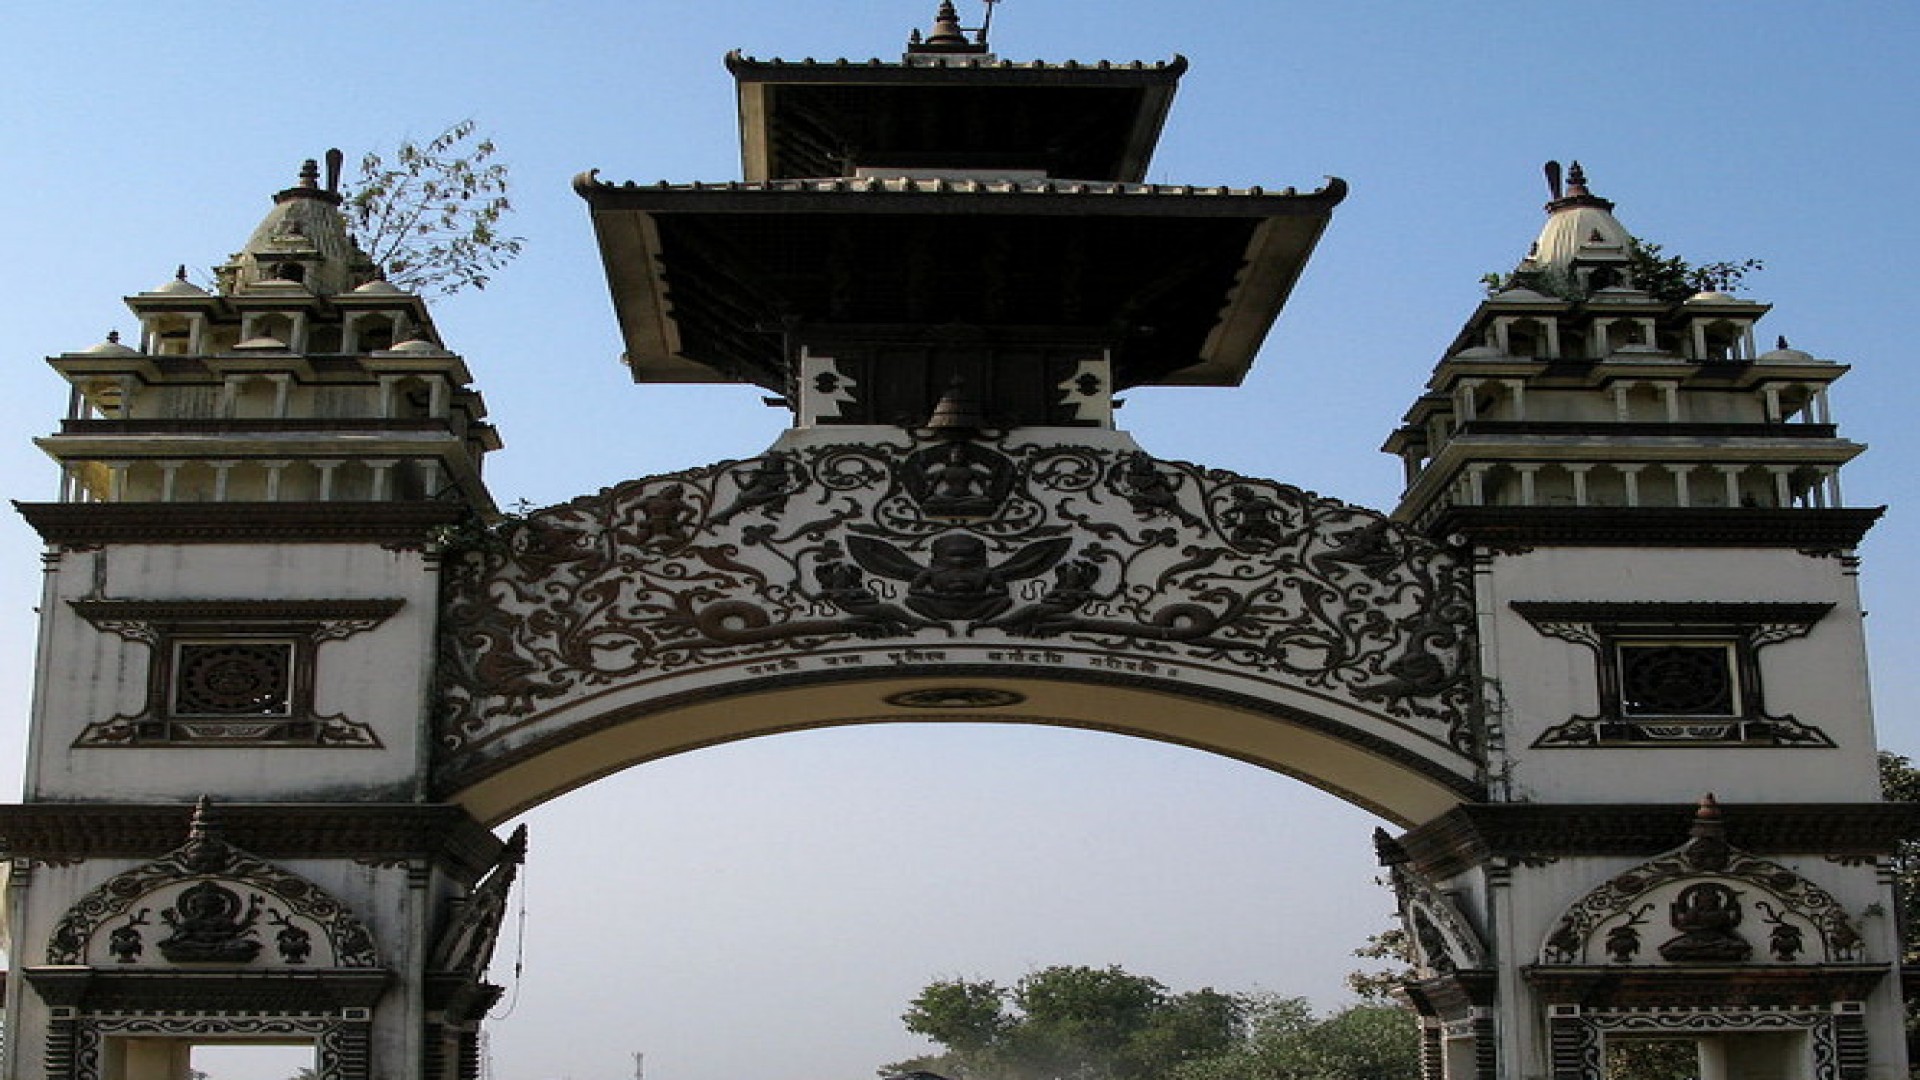 रक्सौल–काठमाडौँ रेलमार्ग निर्माण समझदारीमा हस्ताक्षर गर्न महानिर्देशकलाई अख्तियारी